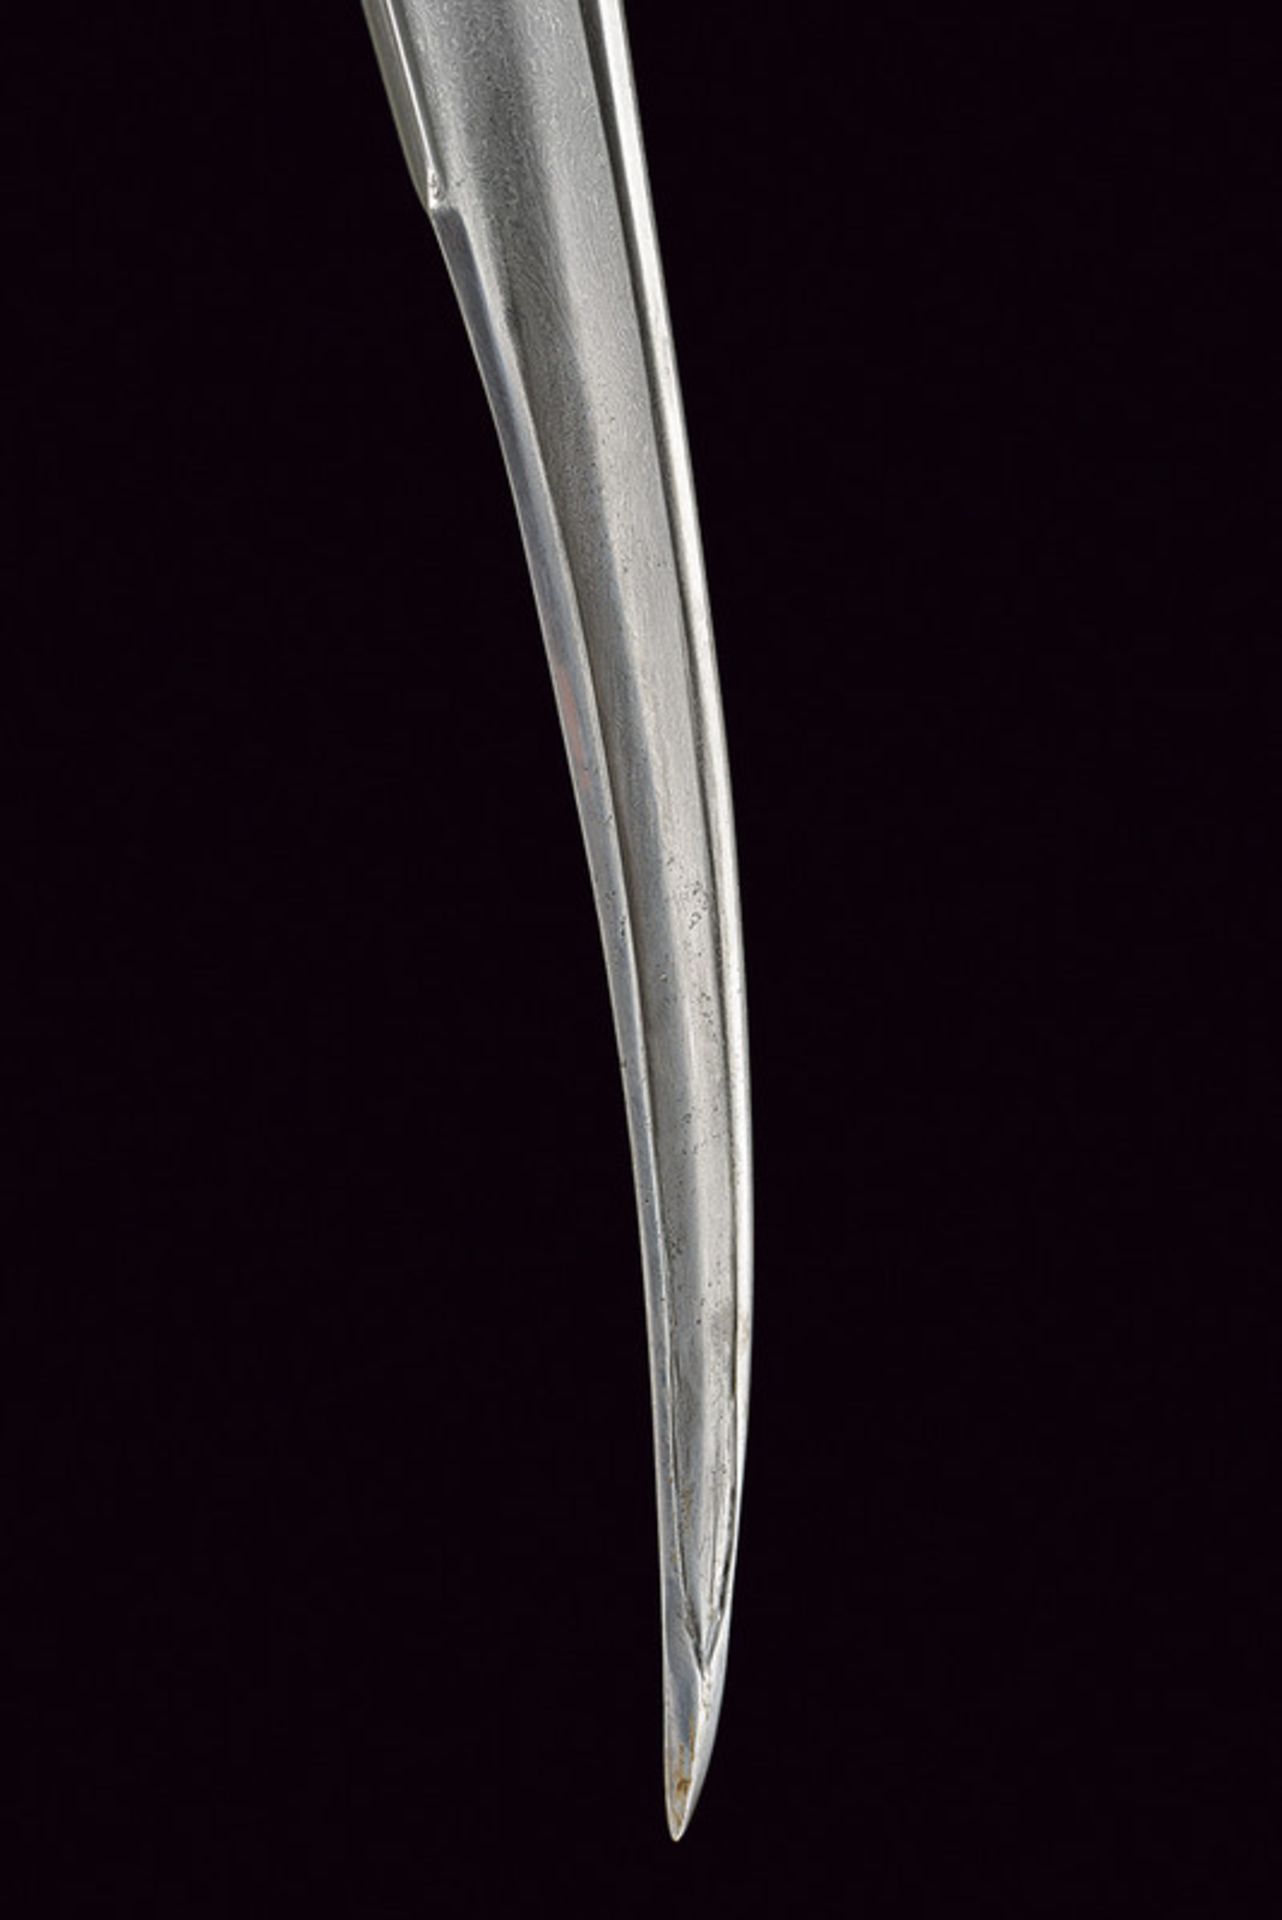 Pesh kapz (dagger) - Image 4 of 6